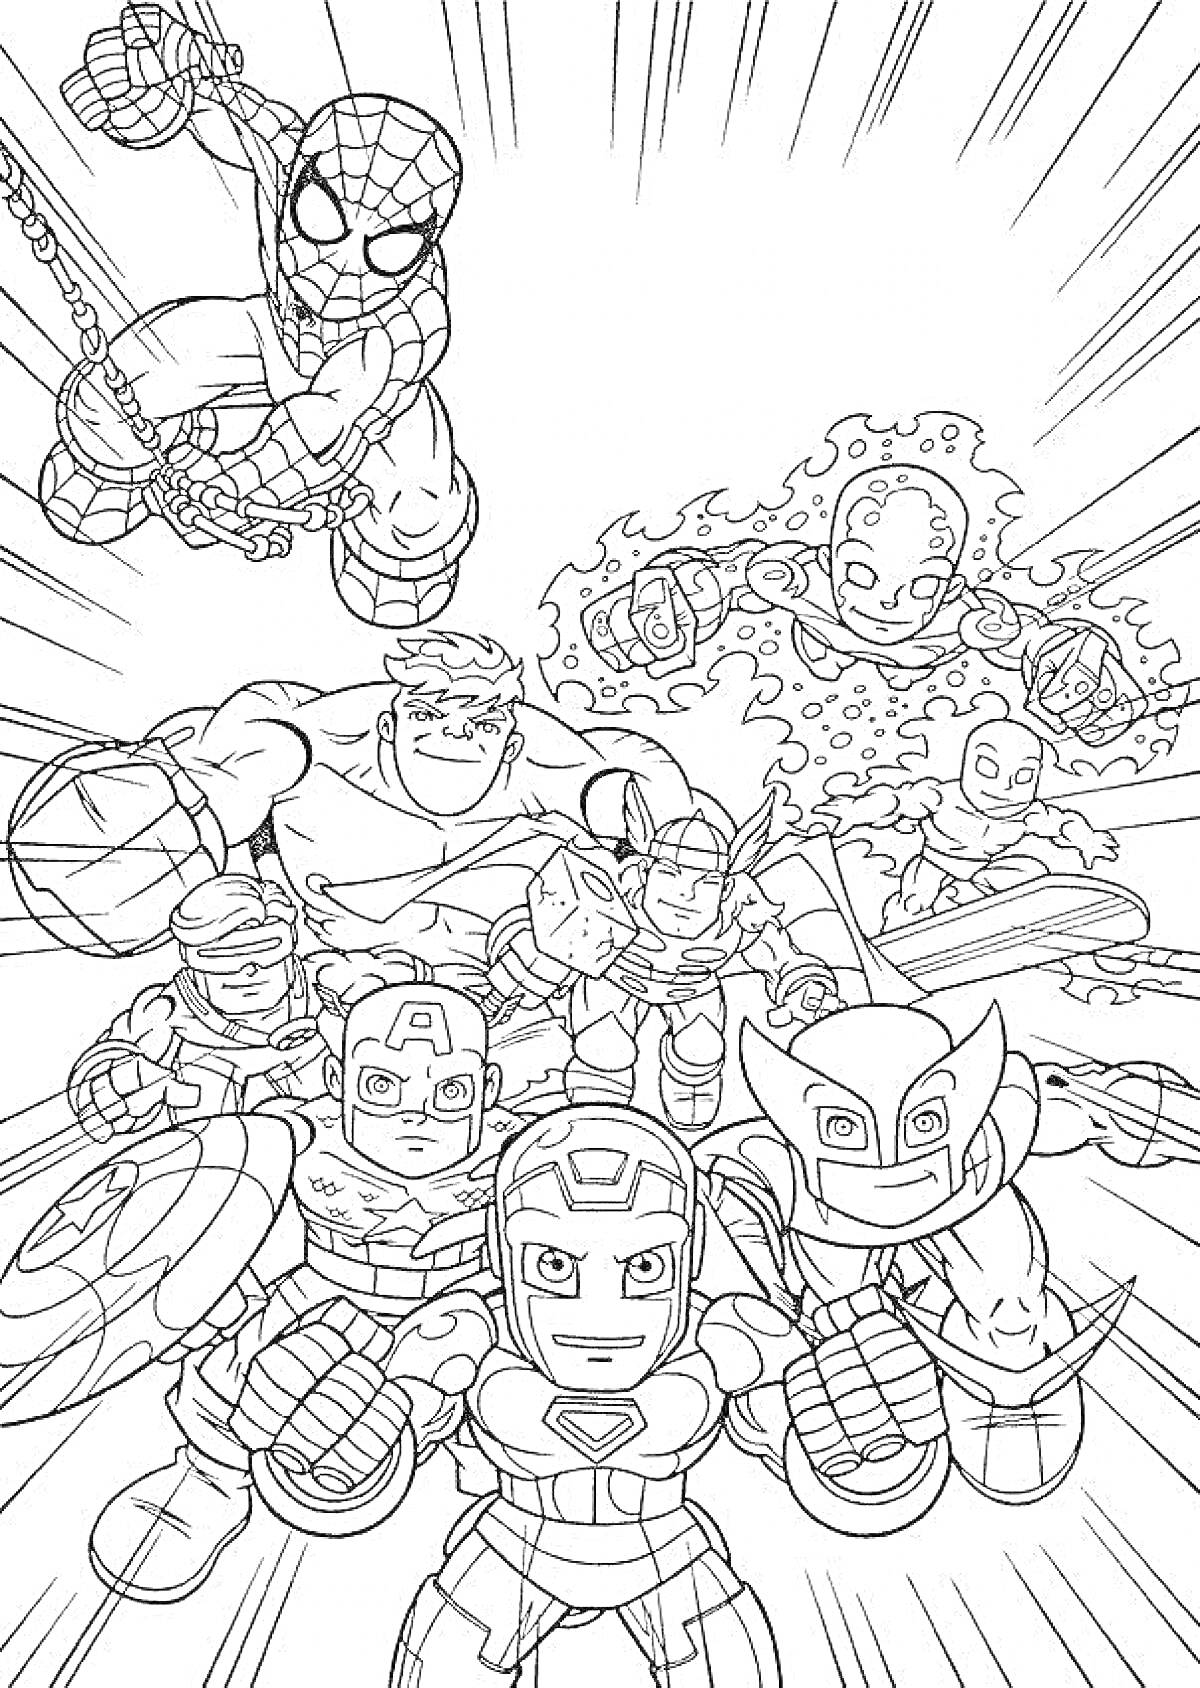 Раскраска раскраска с героями Марвел - Человек-Паук, Тор, Капитан Америка, Халк, Железный Человек, Росомаха, Человек-Факел, Мисс Марвел